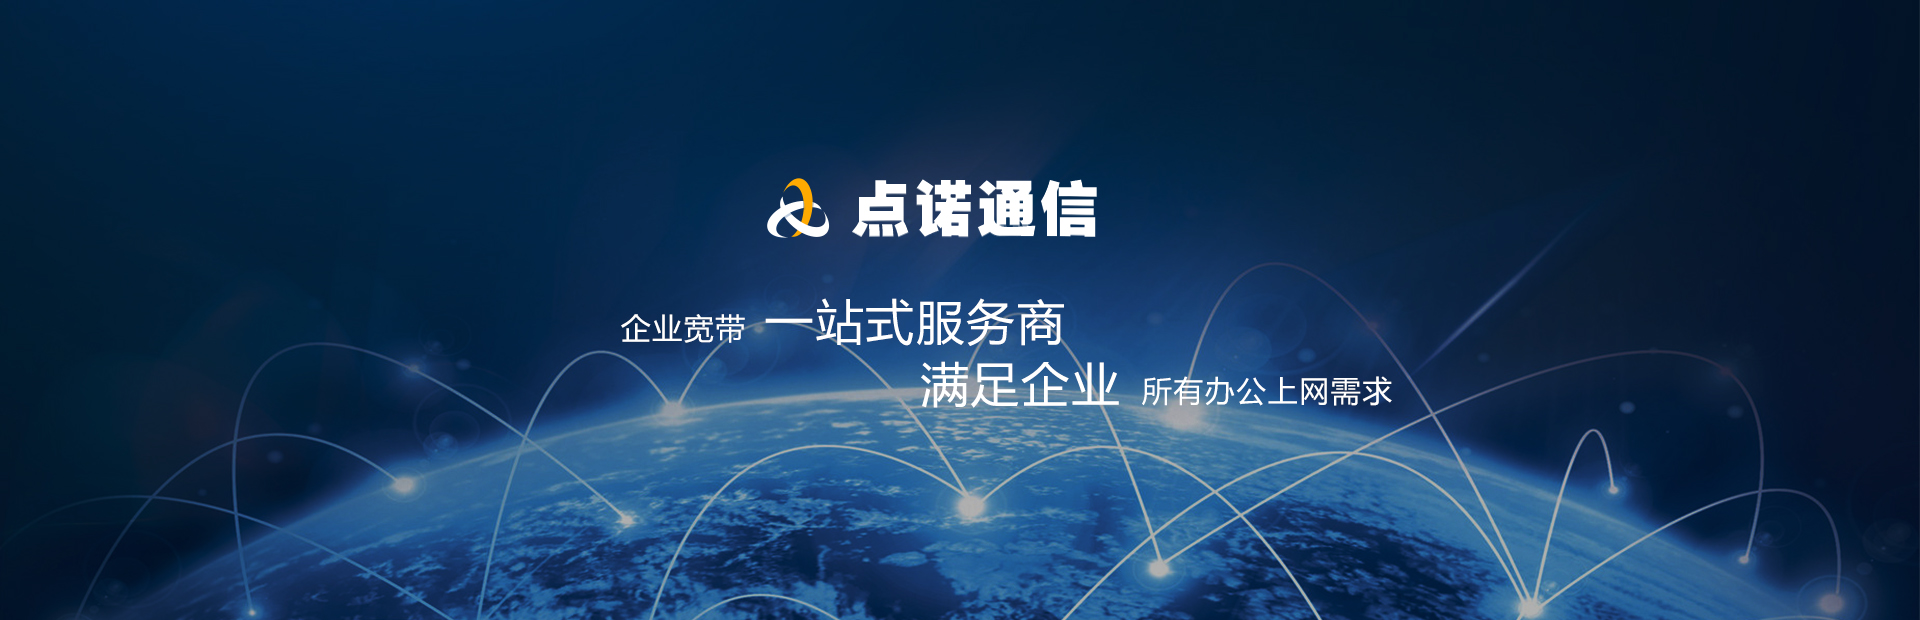 上海联通上网商务宽带